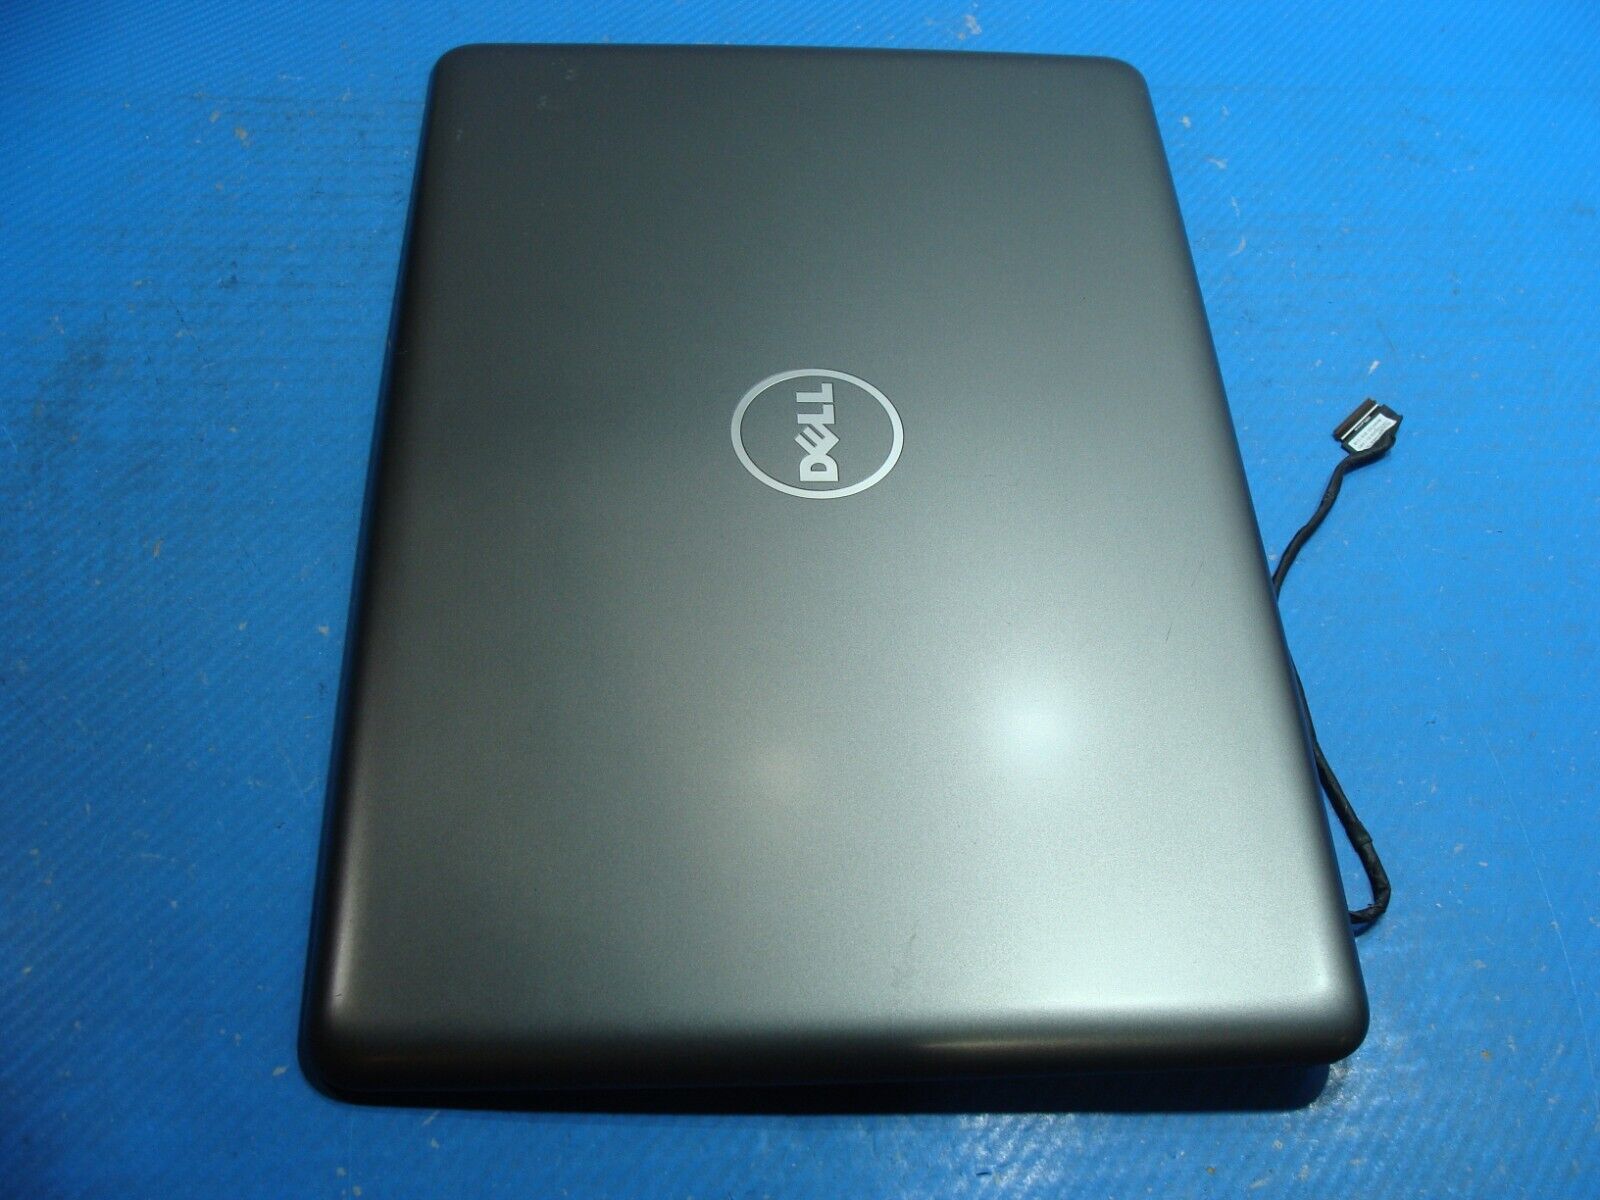 Dell Inspiron 15.6” 15 5567 Genuine Laptop LCD Back Cover w/Front Bezel GK3K9